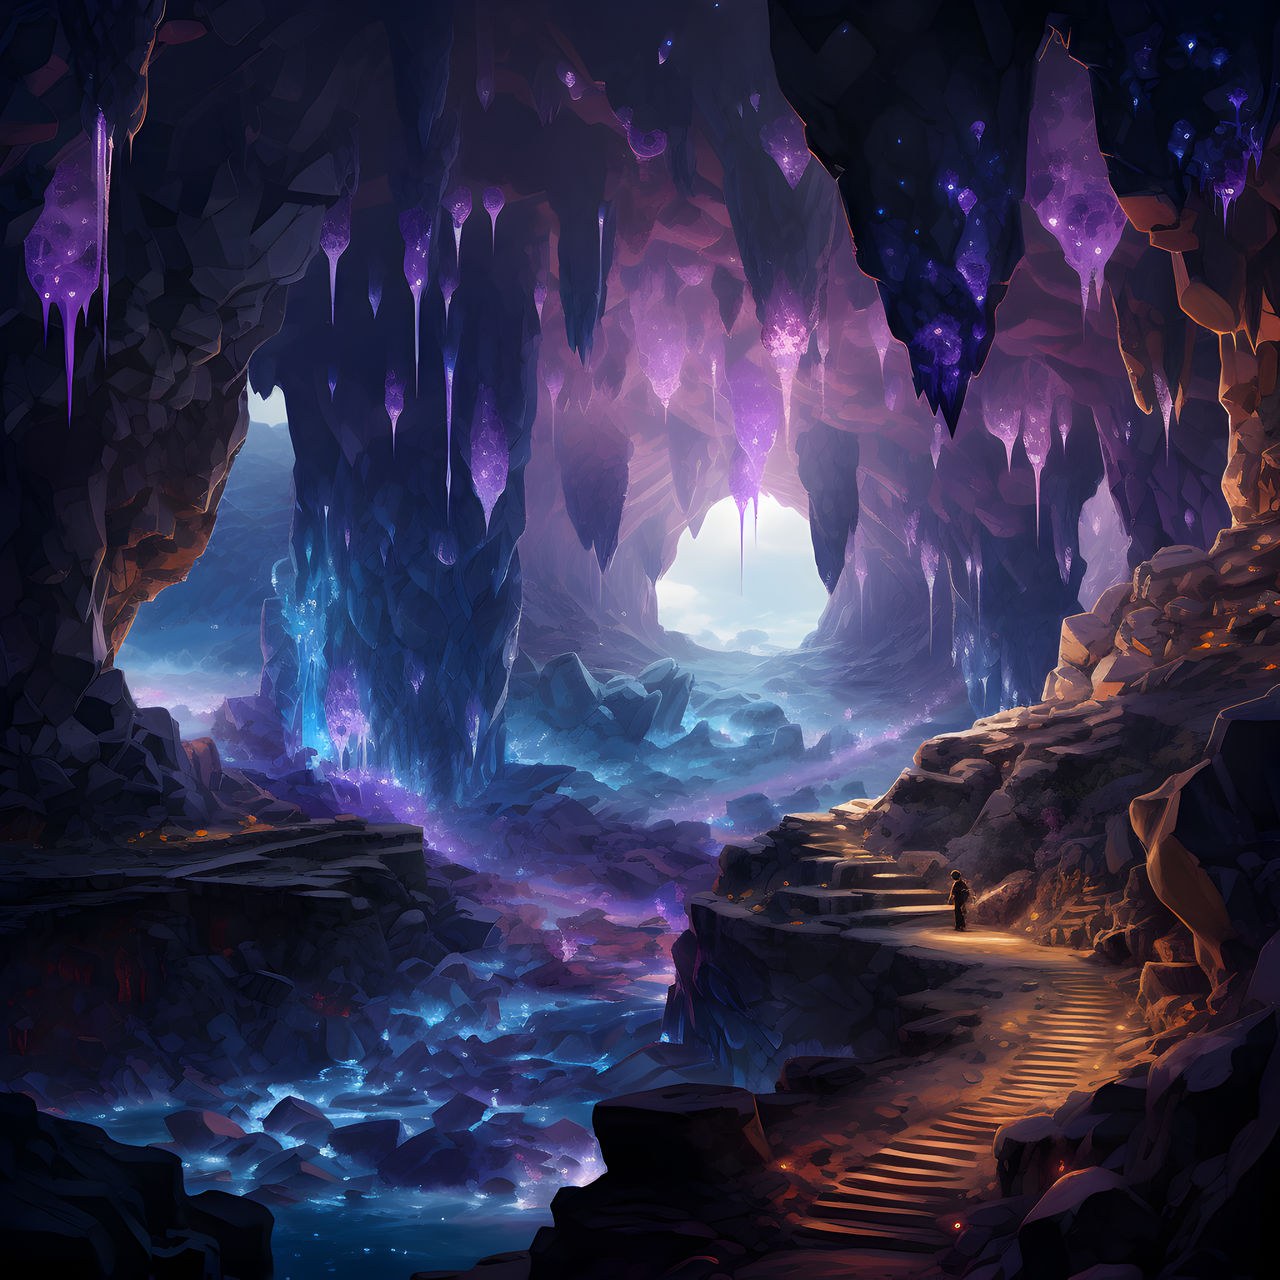 crystal_caves_by_bouzuki_dg6eit7-fullview.jpg